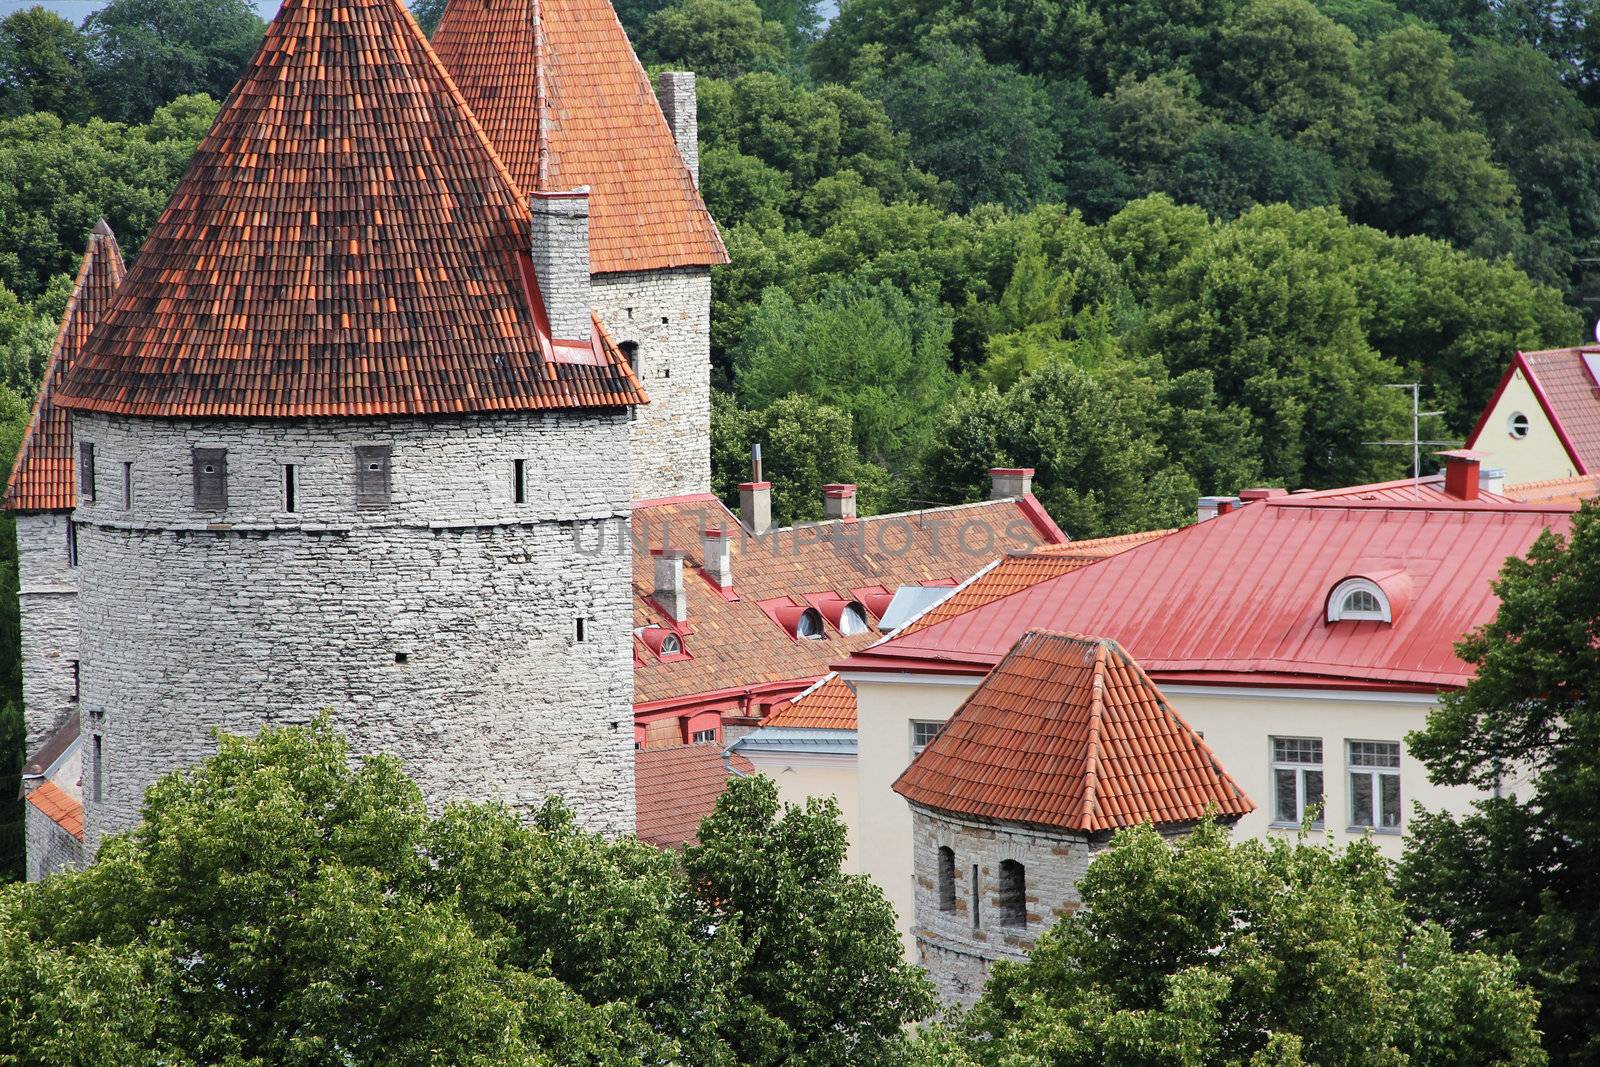 Towers of Tallinn by destillat